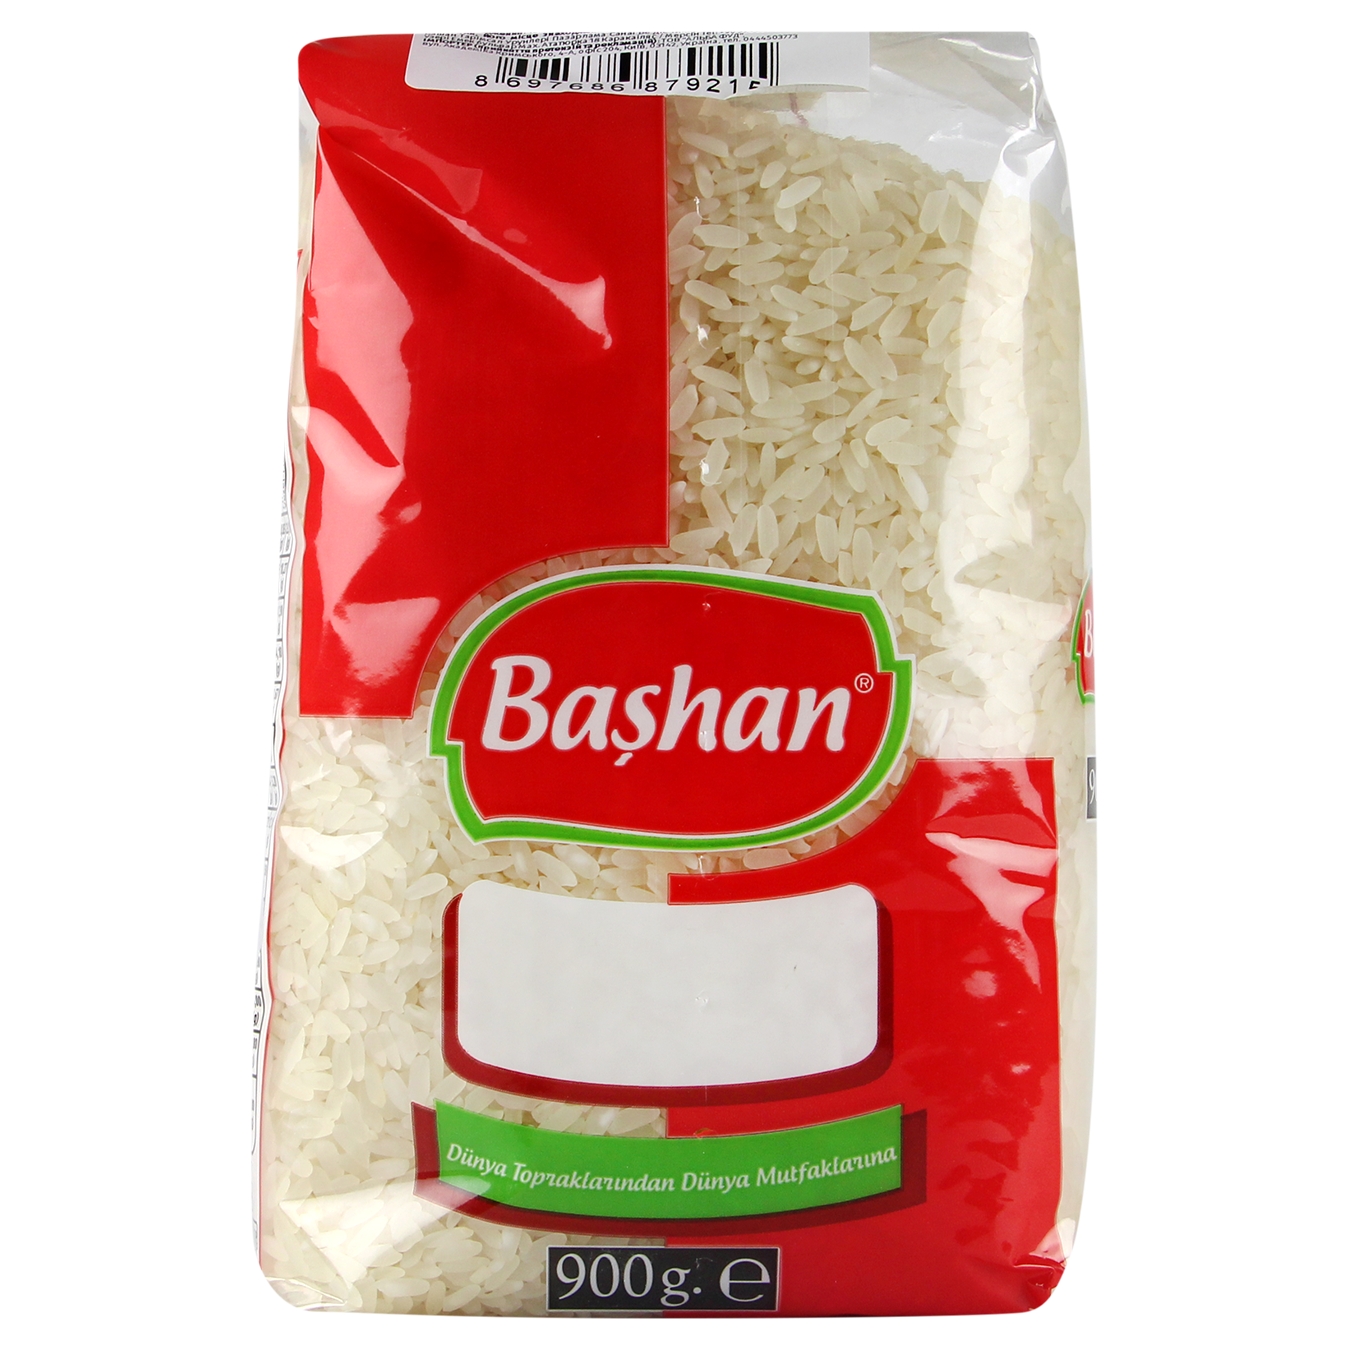 Bashan Long Grain Polished Thai Rice 900g